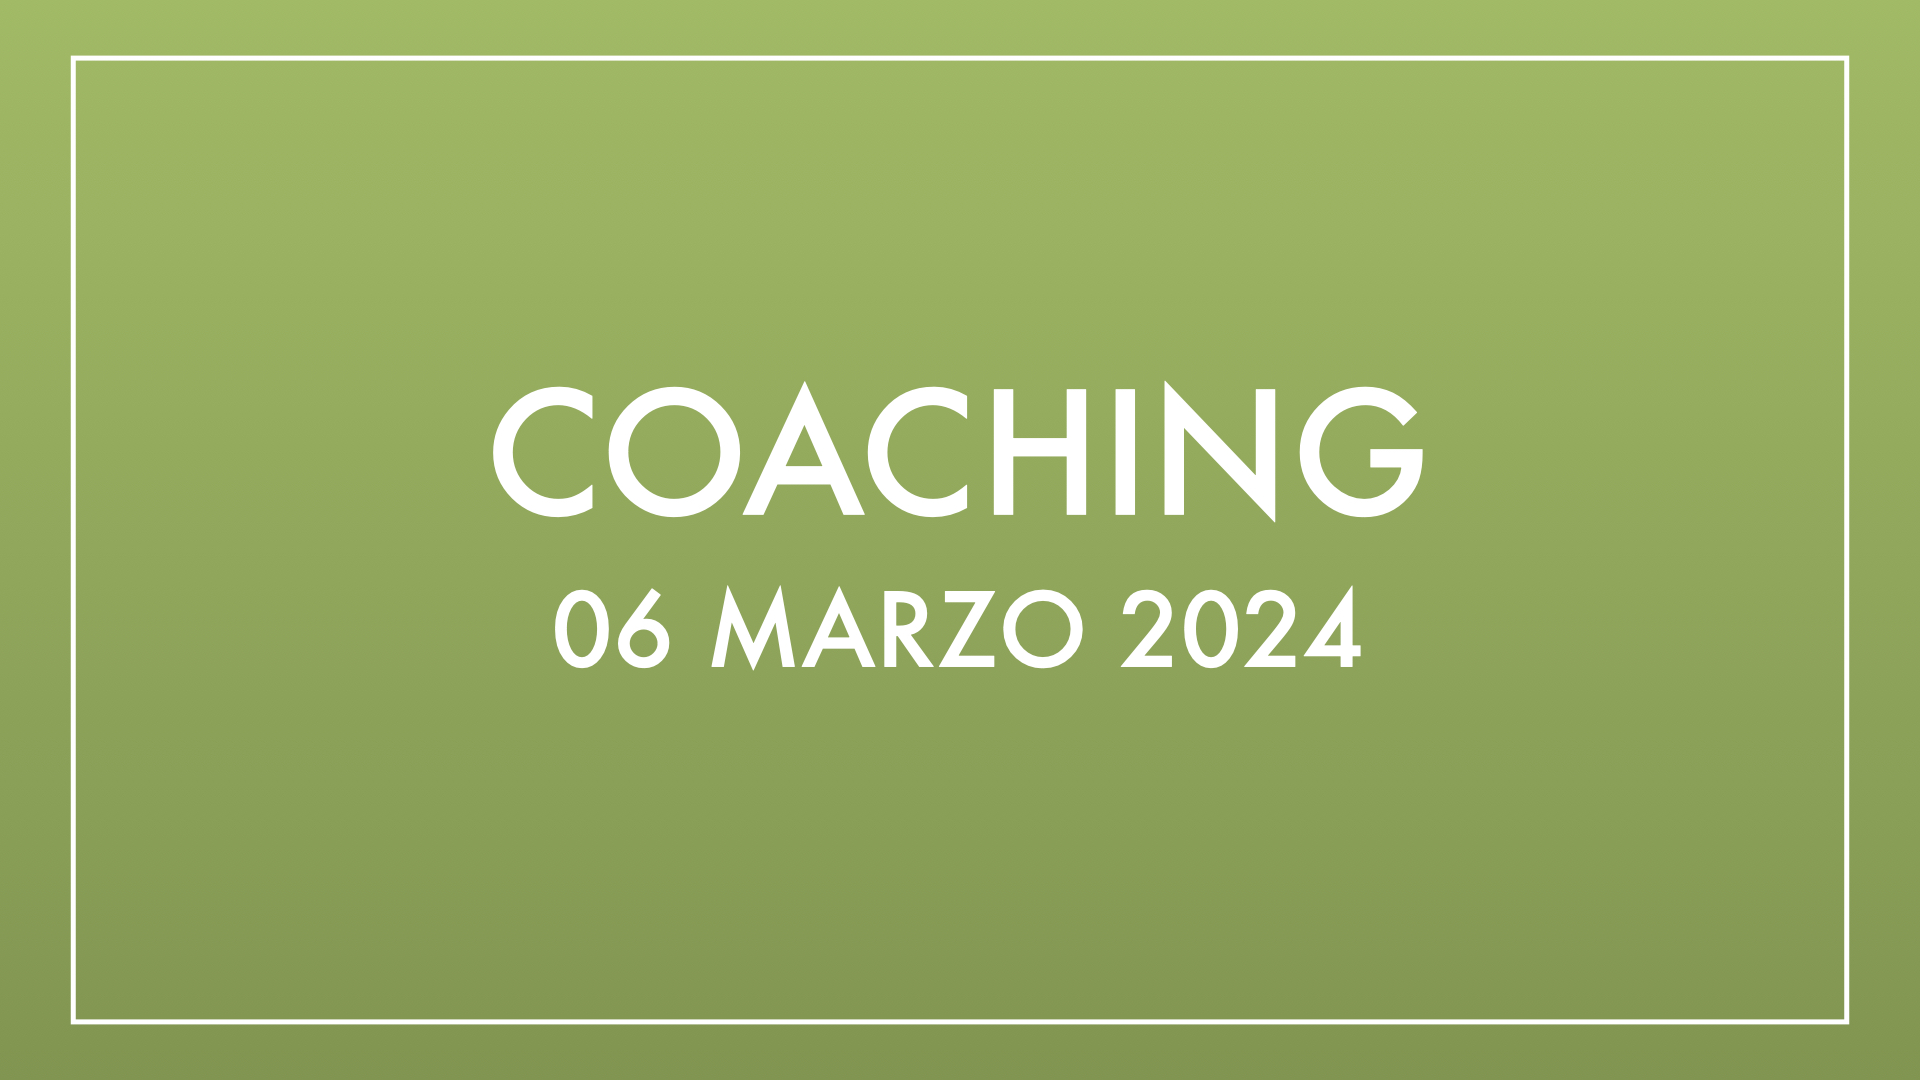 Coaching 06 marzo 2024